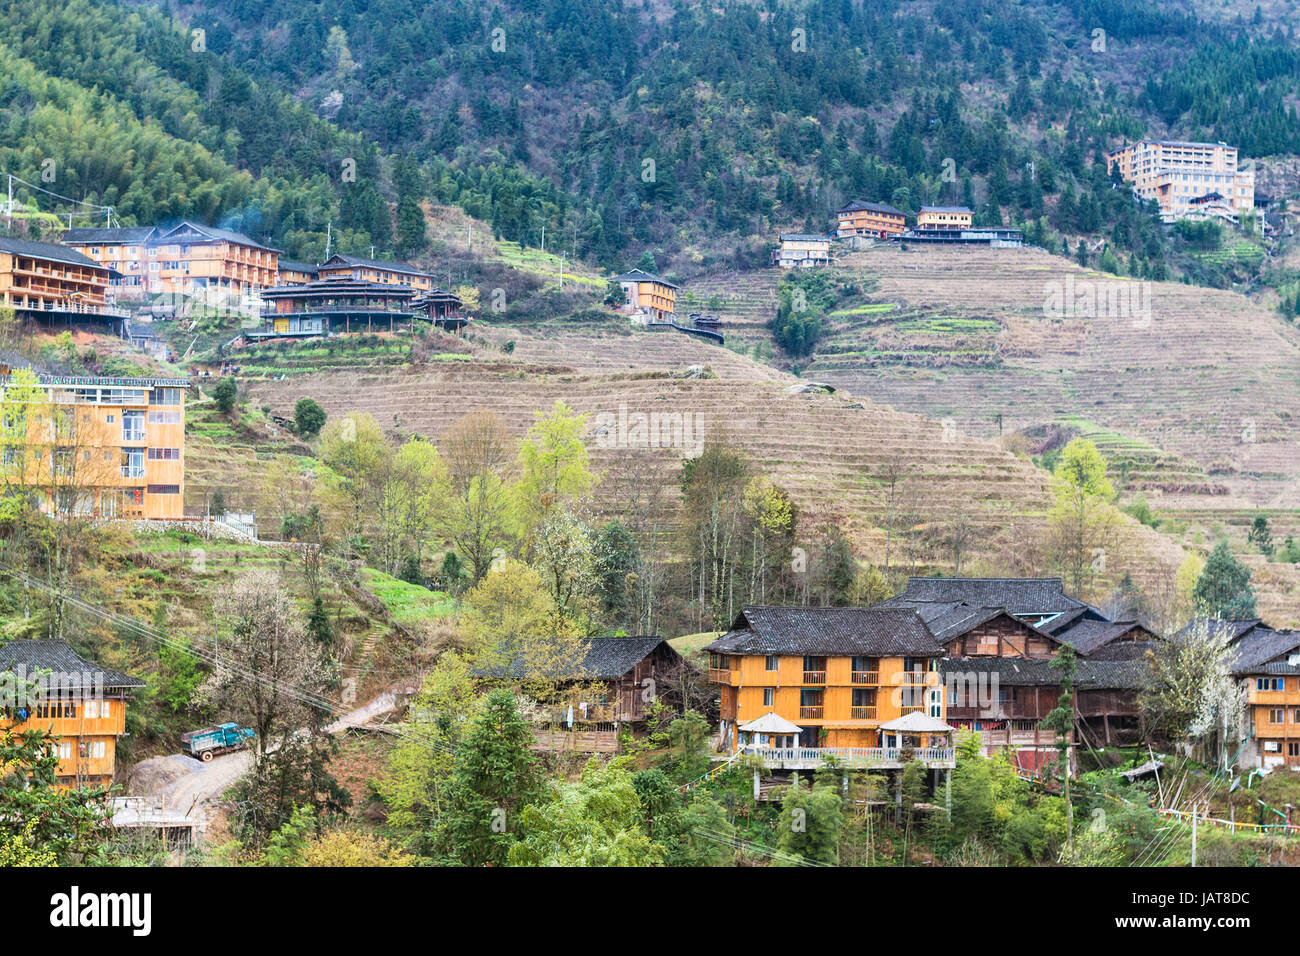 Reise nach China - Blick auf Häuser im Dorf auf terrassierten Hügeln von Dazhai Longsheng Reisterrassen (Dragon es Rückgrat Terrasse, Longji Reisterrassen) Ländern Stockfoto